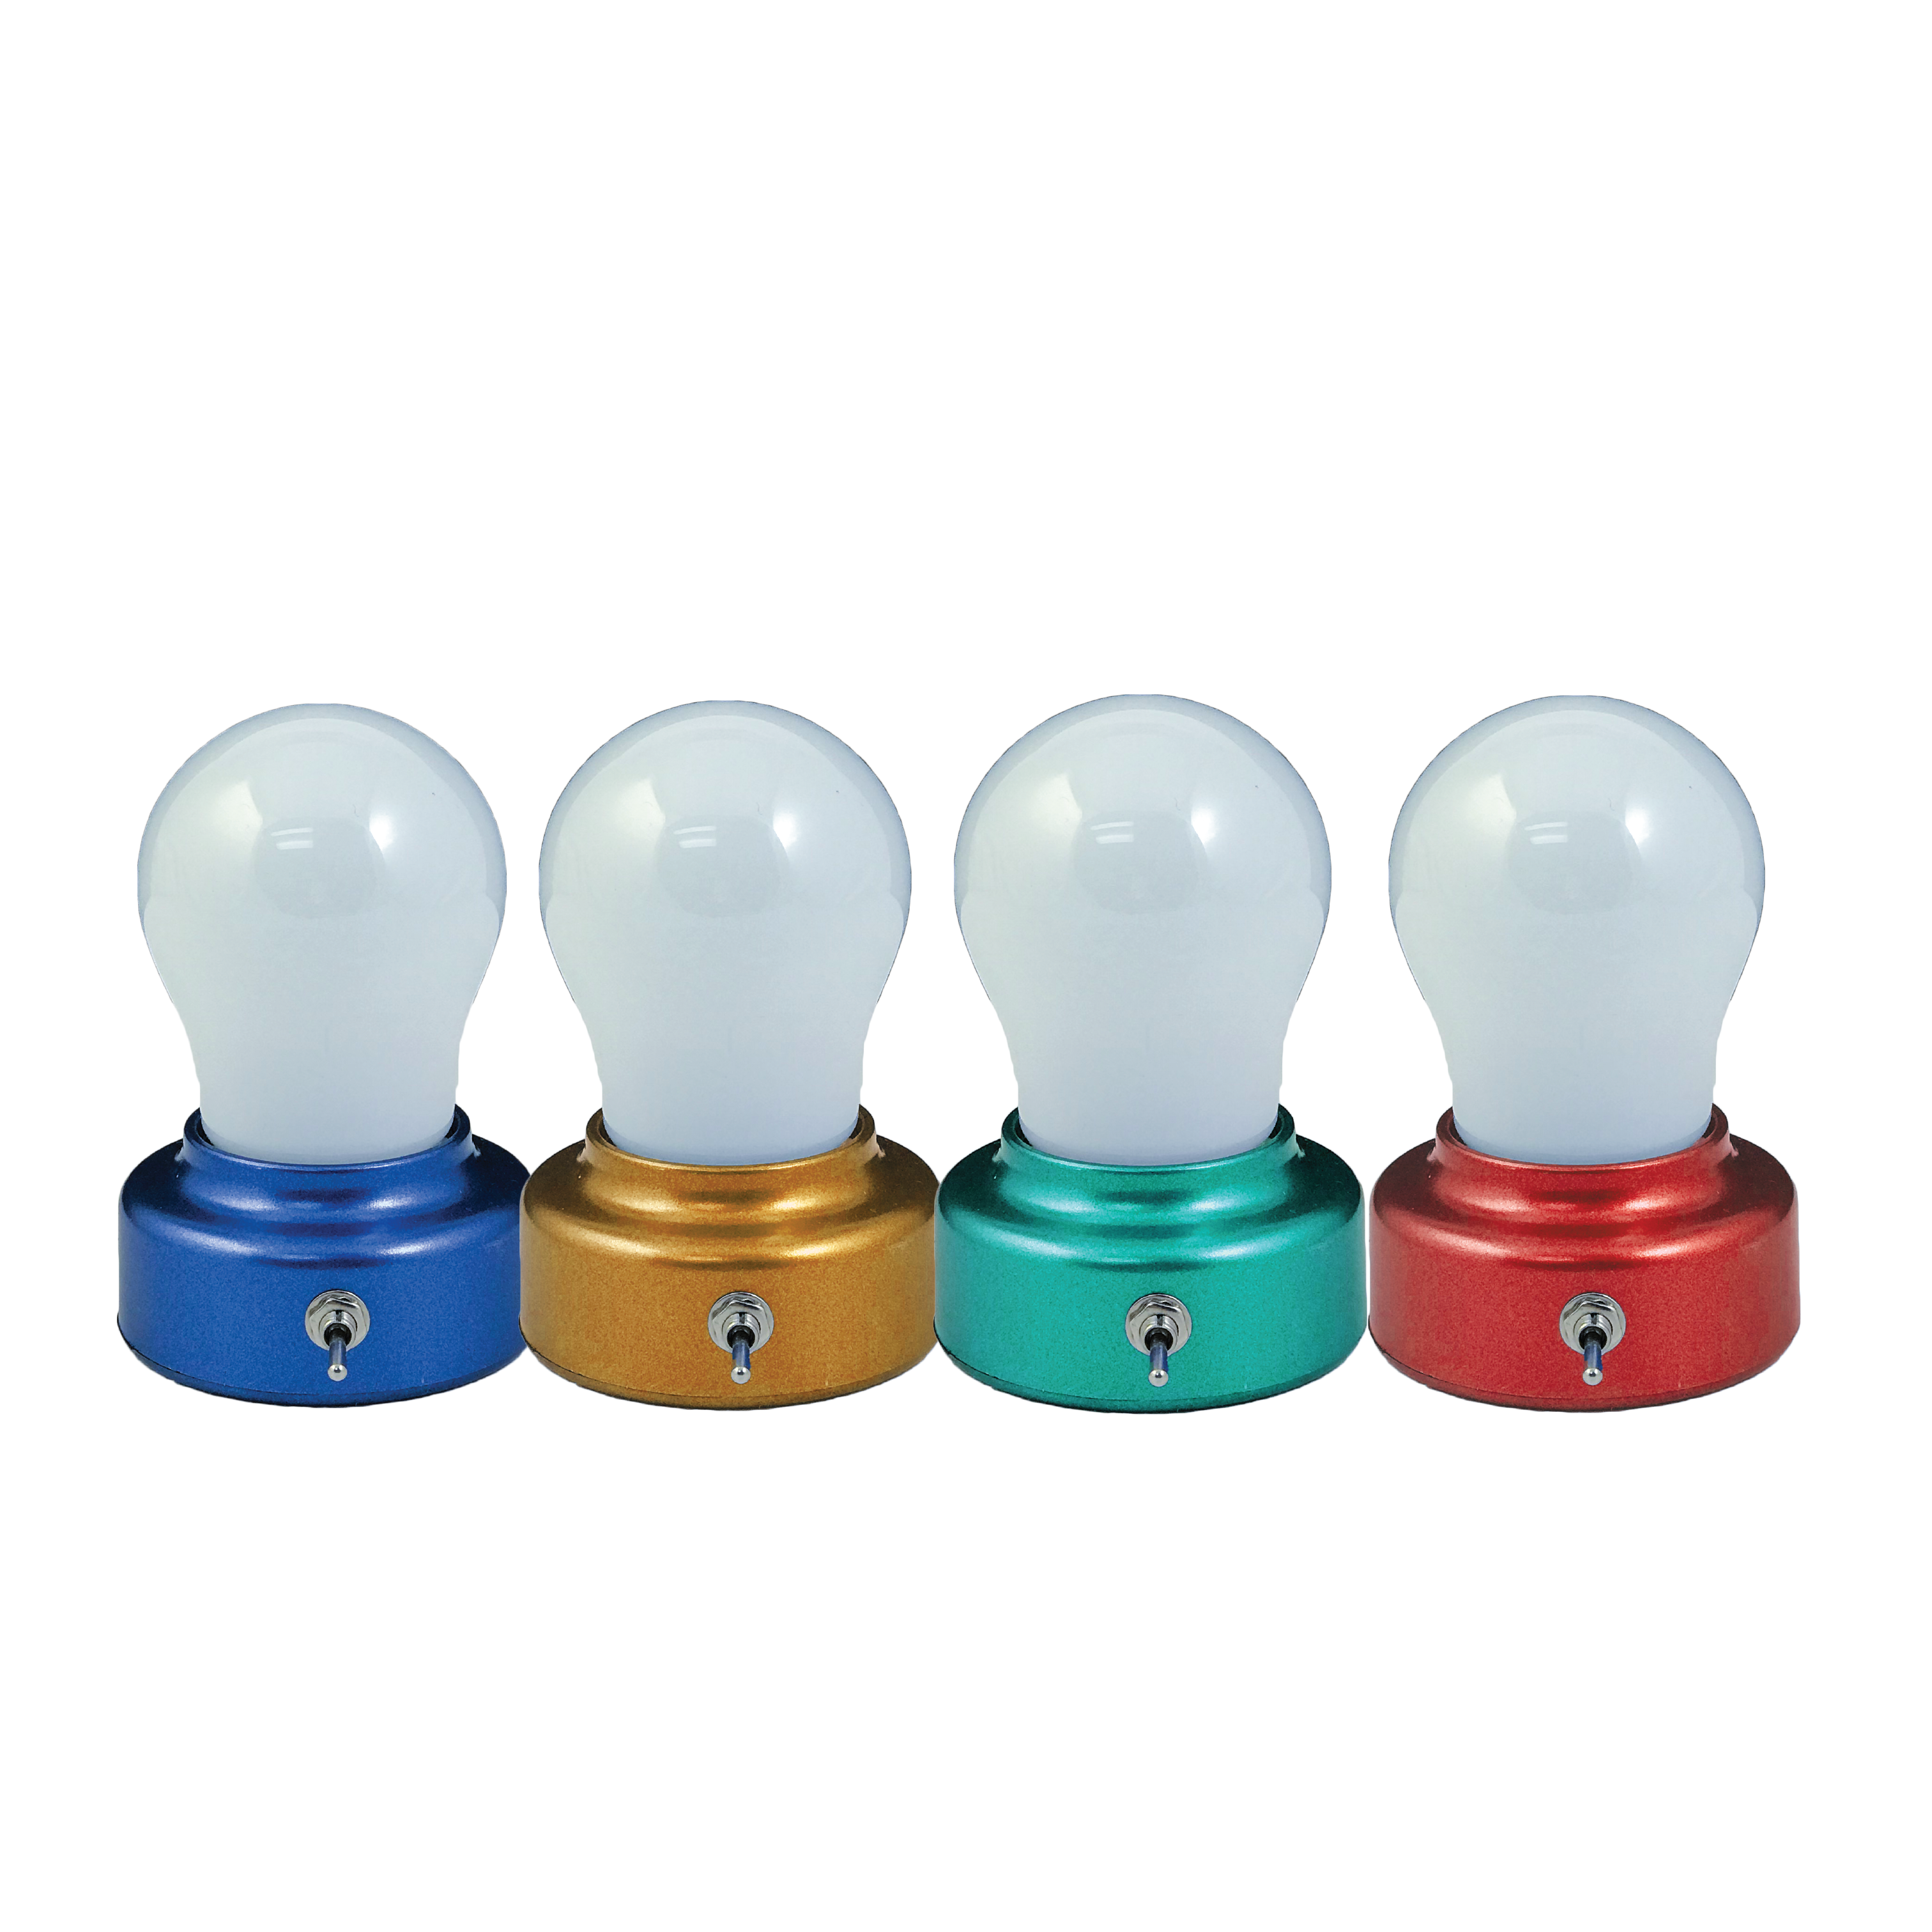 wholesale, wholesale lights, bulb, wireless light bulb, battery powered light bulb, desk light, night light, area lighting